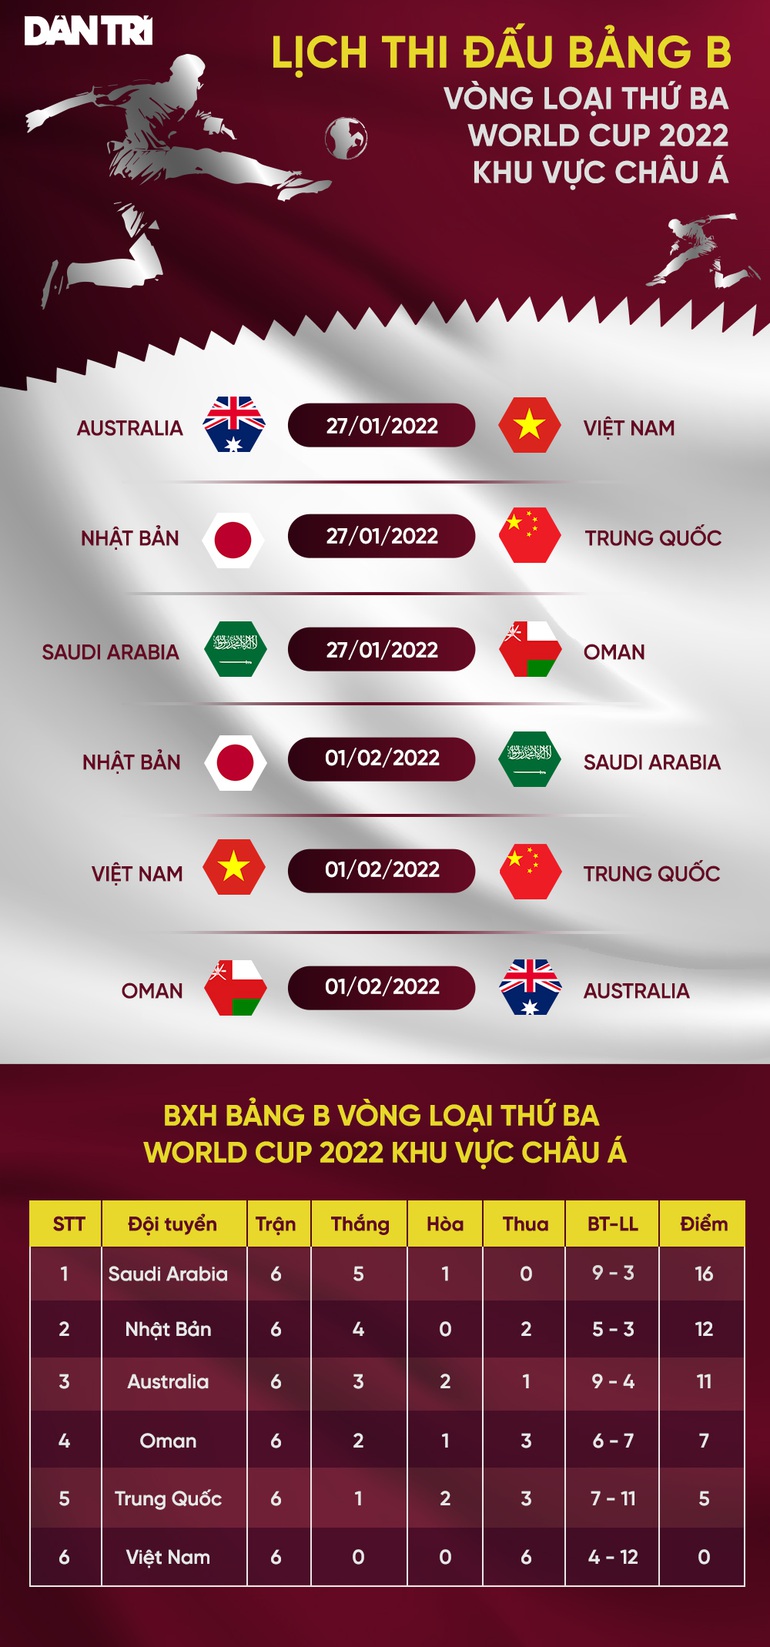 Đội tuyển Việt Nam đón Hùng Dũng, Văn Lâm trở lại ở vòng loại World Cup - 3